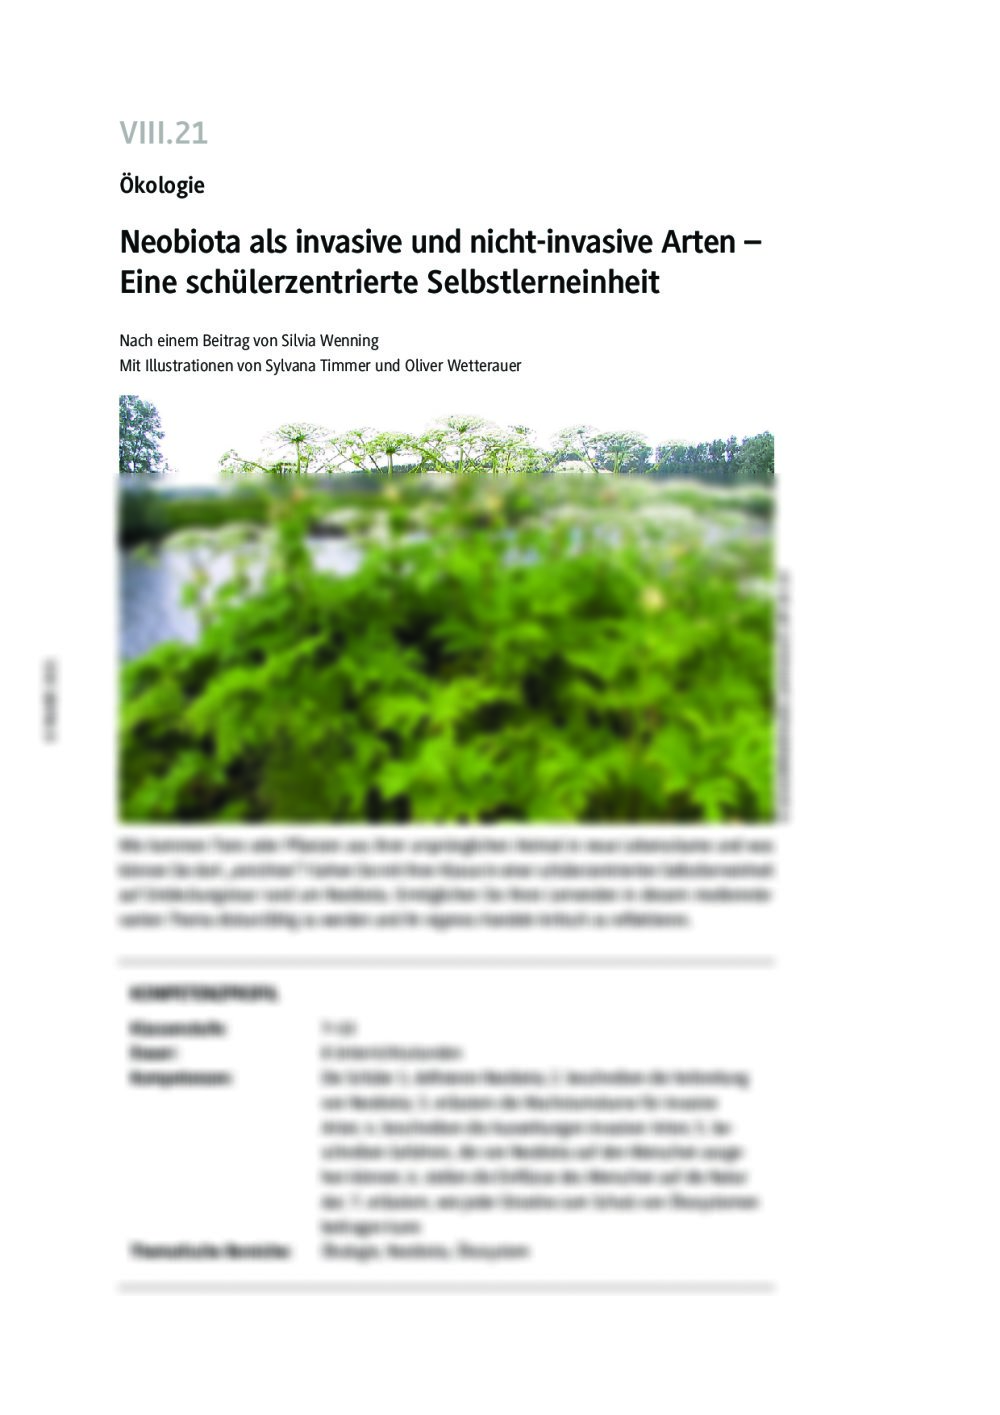 Neobiota als invasive und nicht-invasive Arten - Seite 1